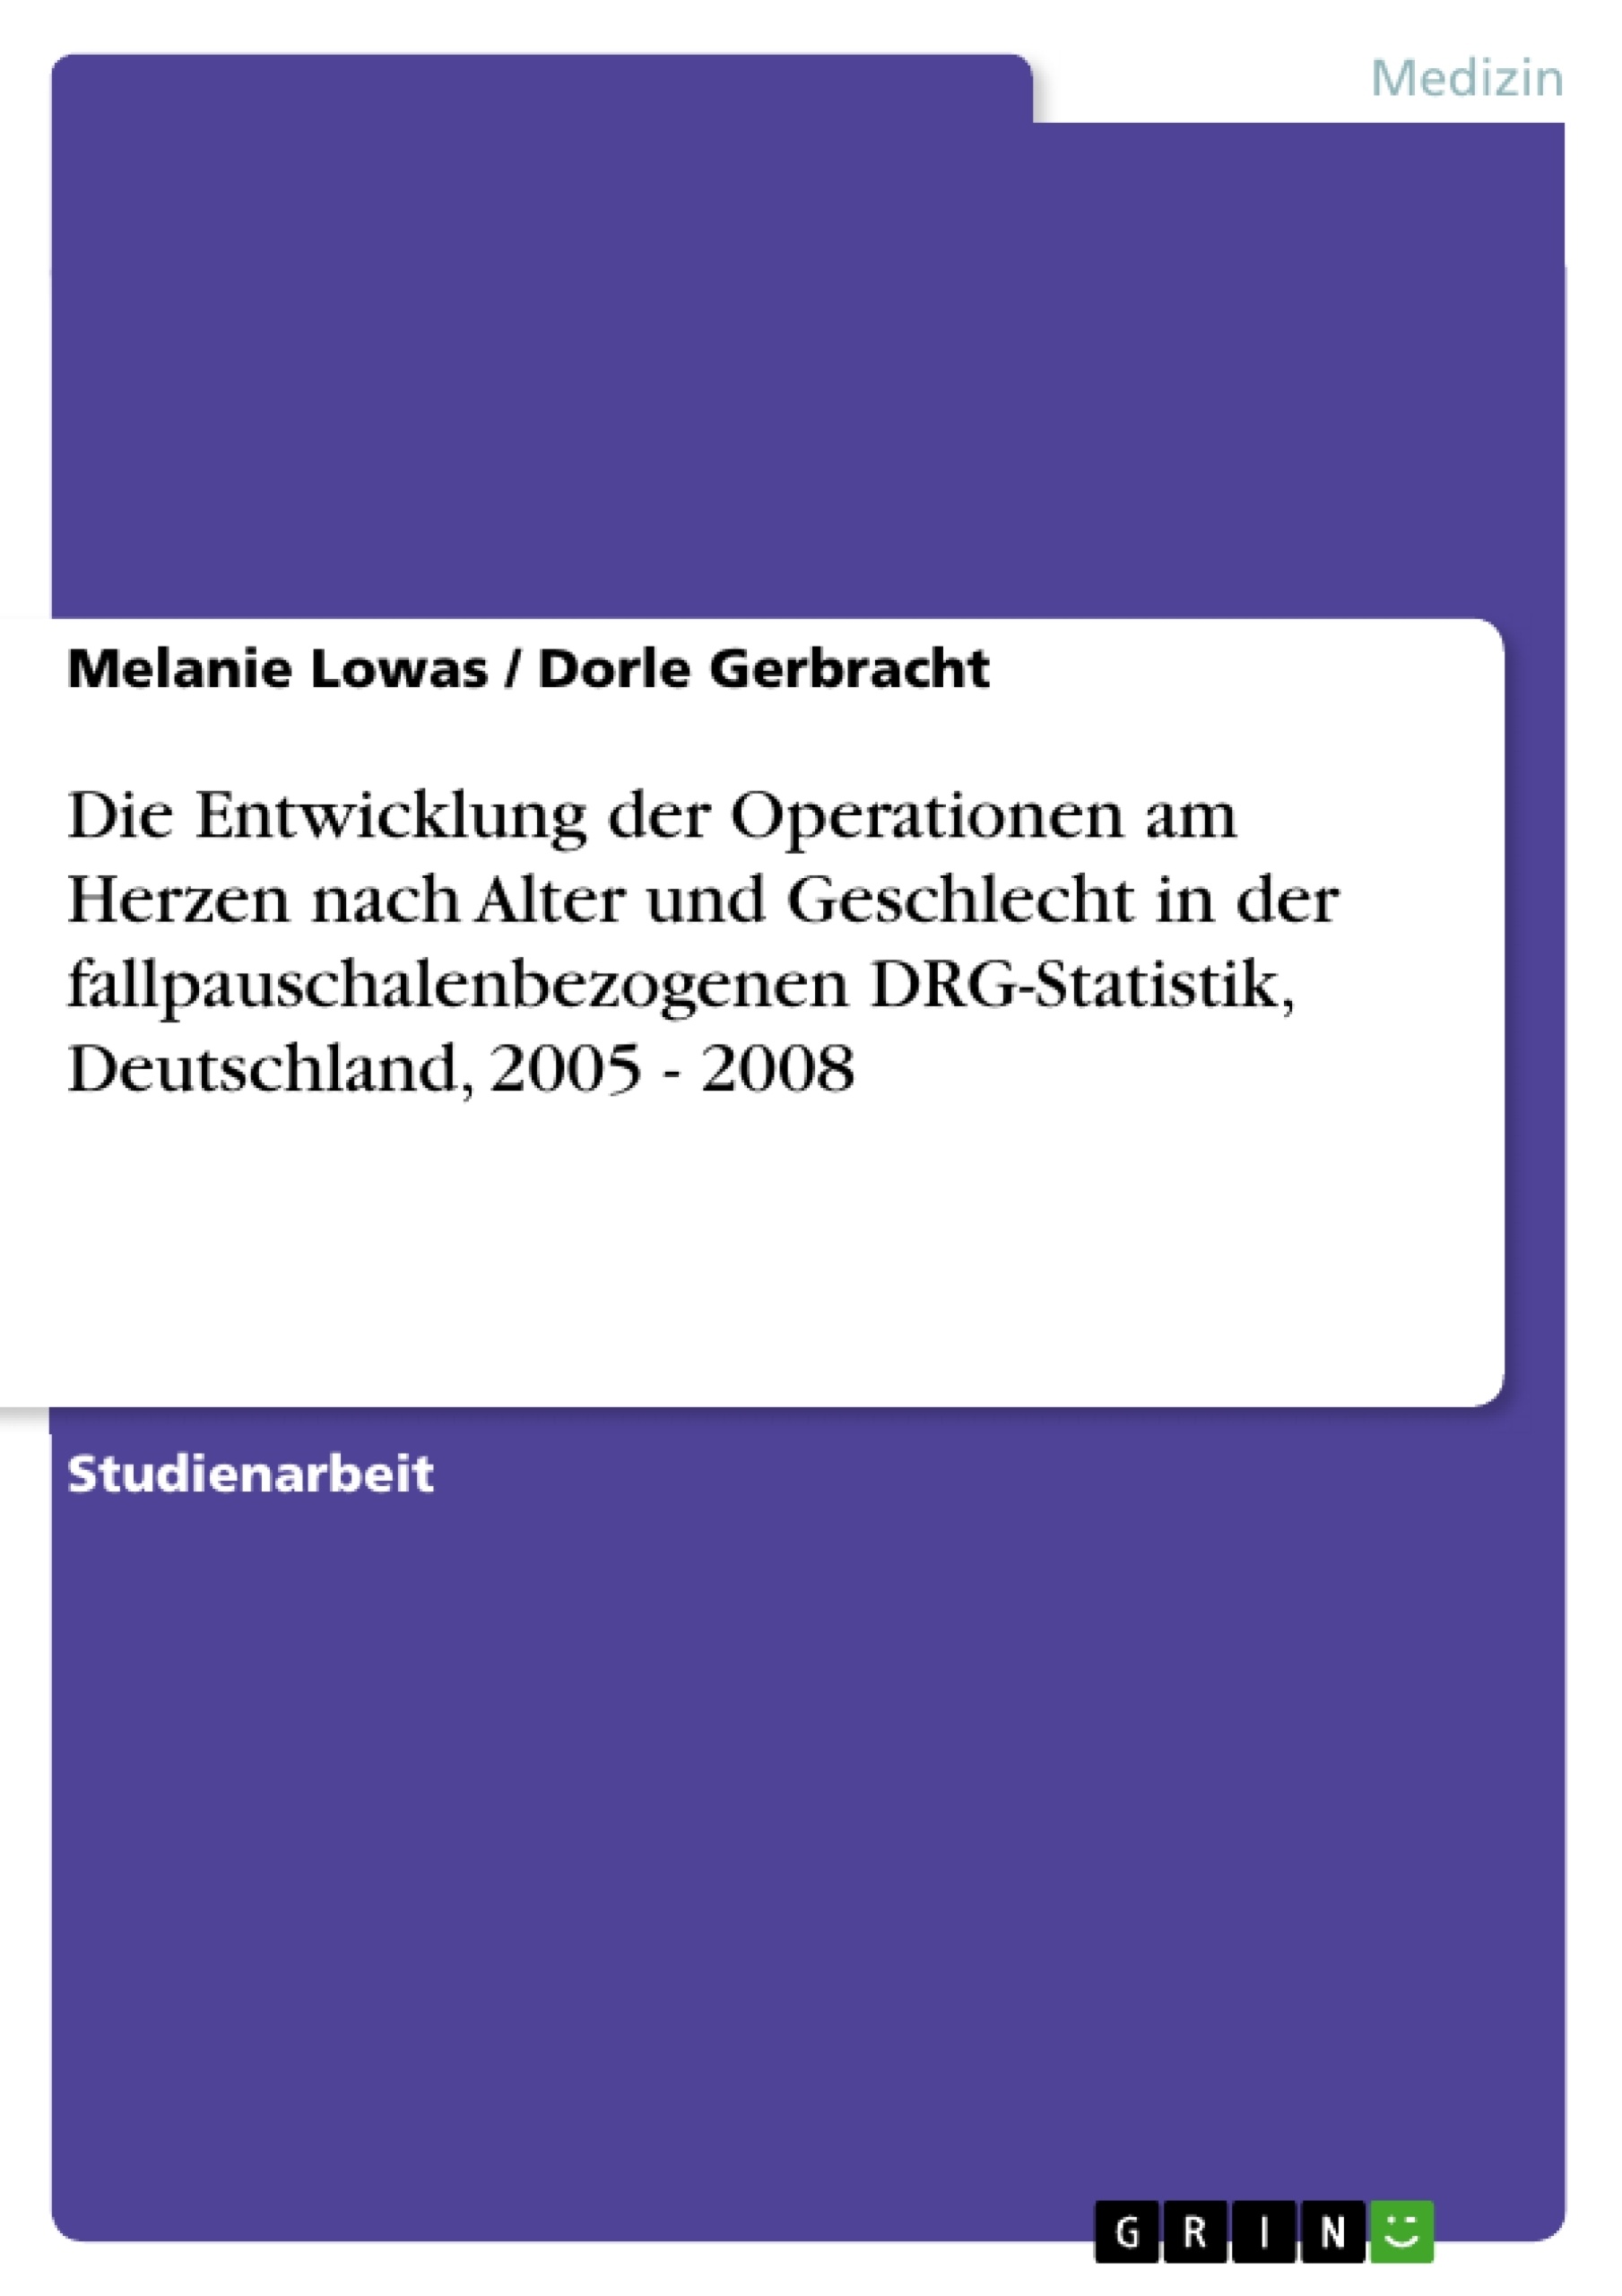 Titre: Die Entwicklung der Operationen am Herzen nach Alter und Geschlecht in der fallpauschalenbezogenen DRG-Statistik, Deutschland, 2005 - 2008